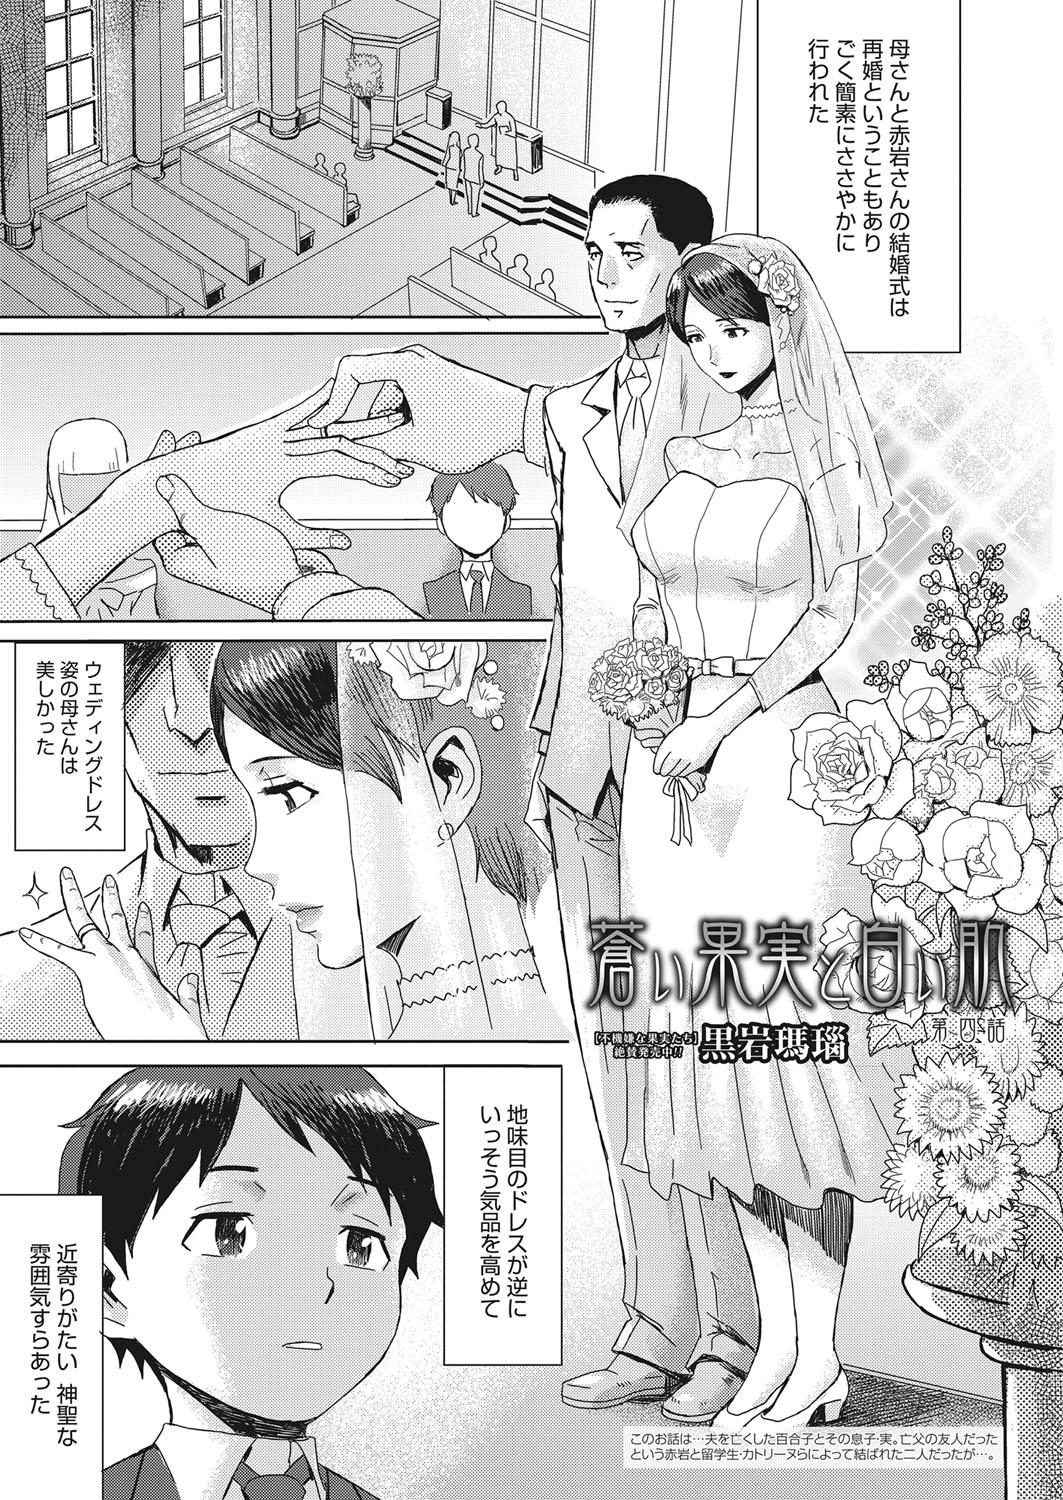 Puta Web Manga Bangaichi Vol. 15 Family Roleplay - Page 4